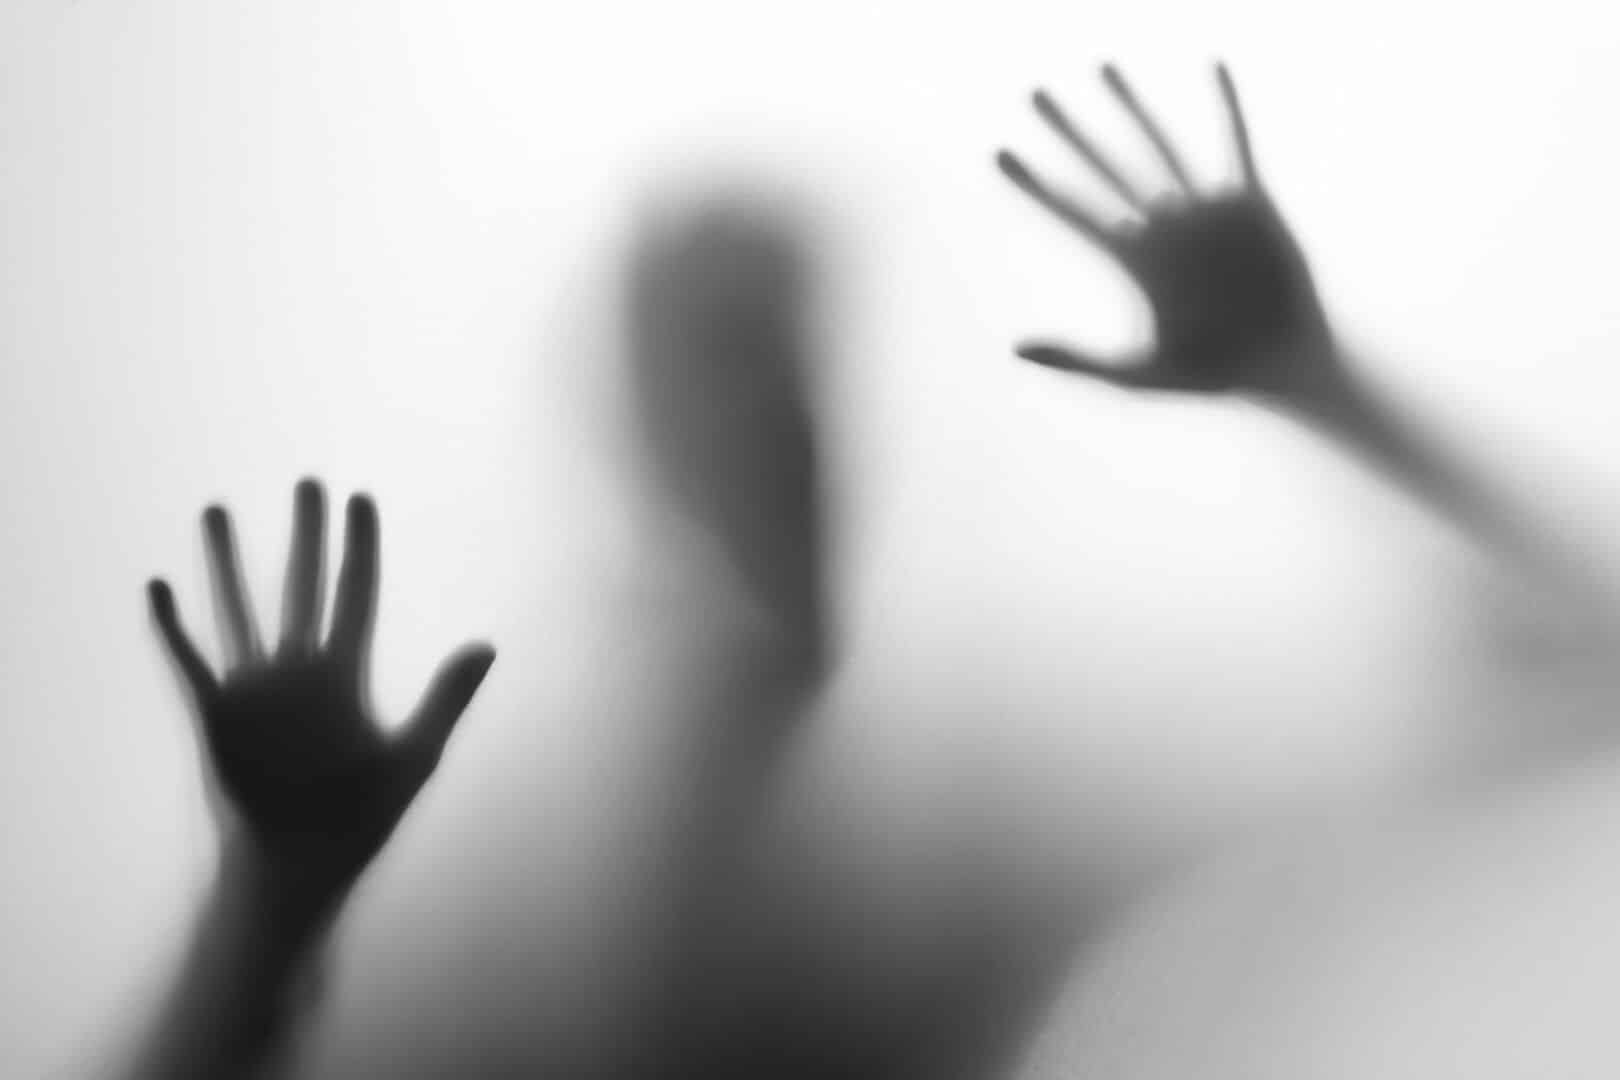 Fantasmas - como a ciência explica fenômenos ligados às assombrações